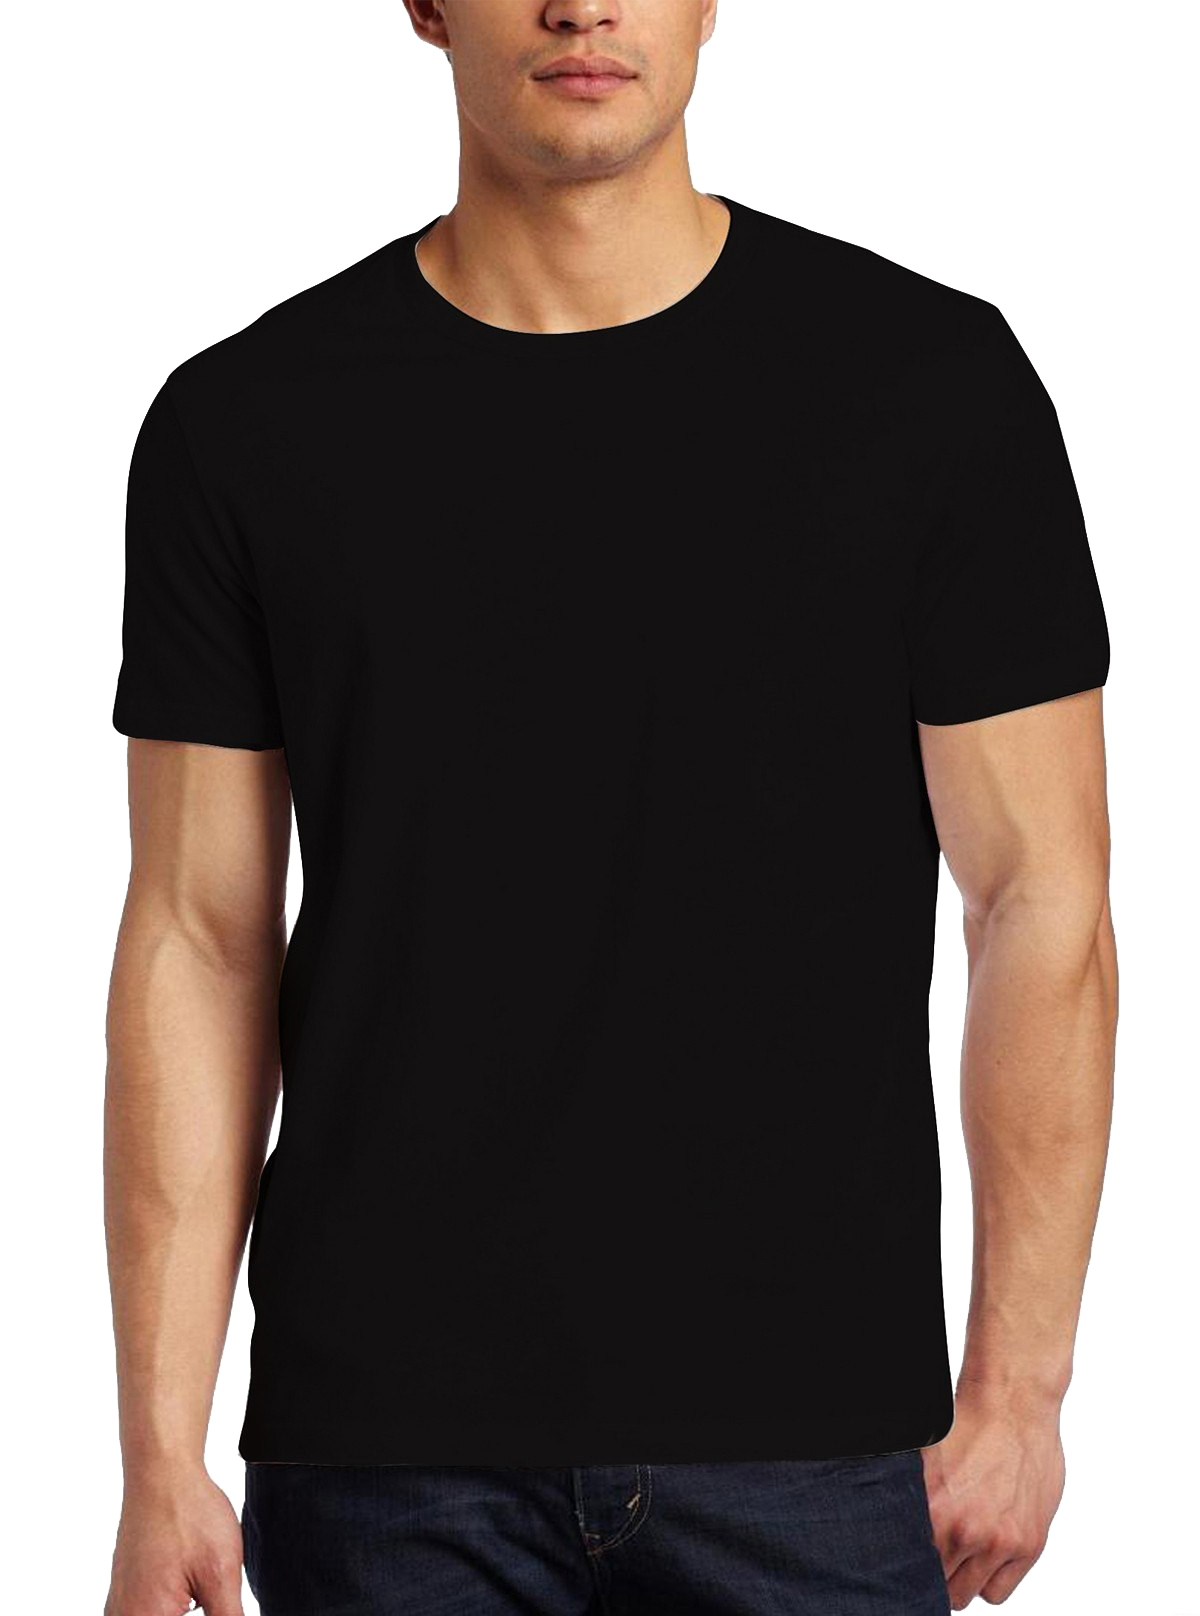 Schwarzes T-Shirt PNG-Bildhintergrund